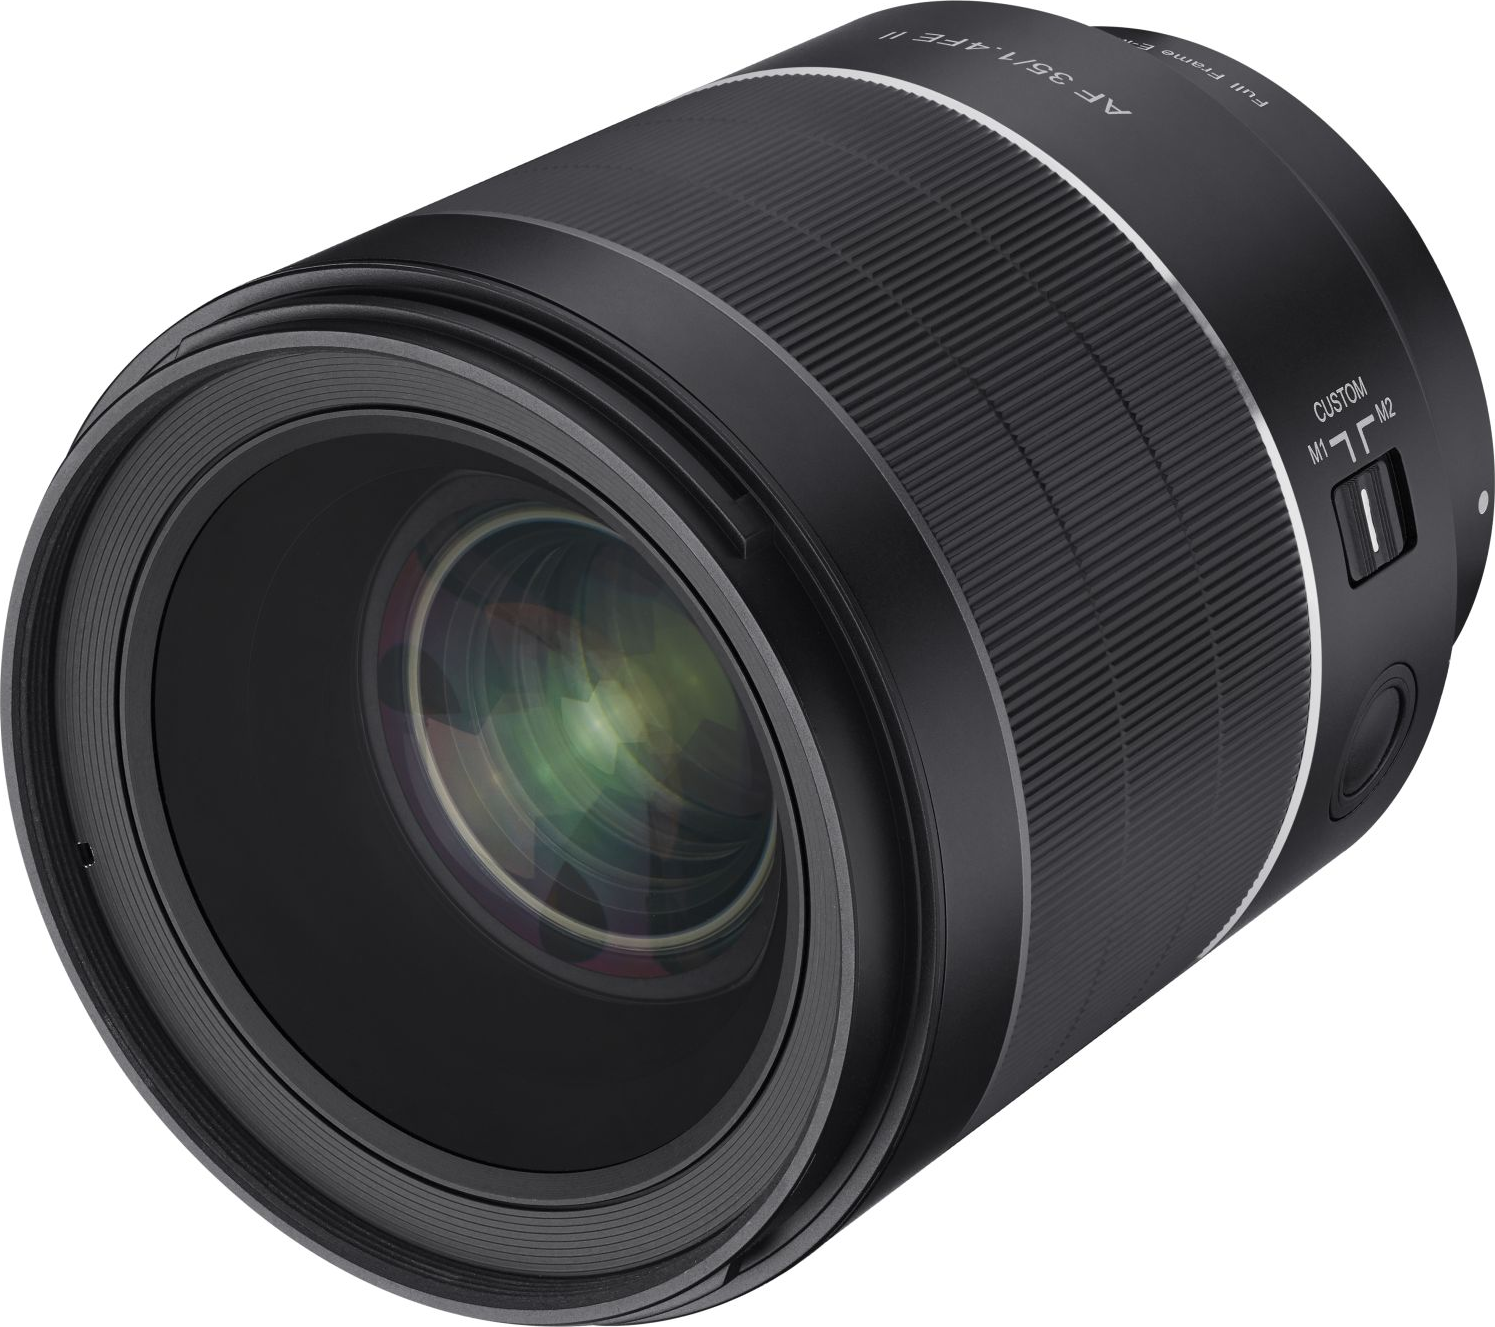 SAMYANG AF 35mm f/1.4 FE II (Sony E-Mount) - Longueur focale fixe(Sony E-Mount, Plein format, APS-C)